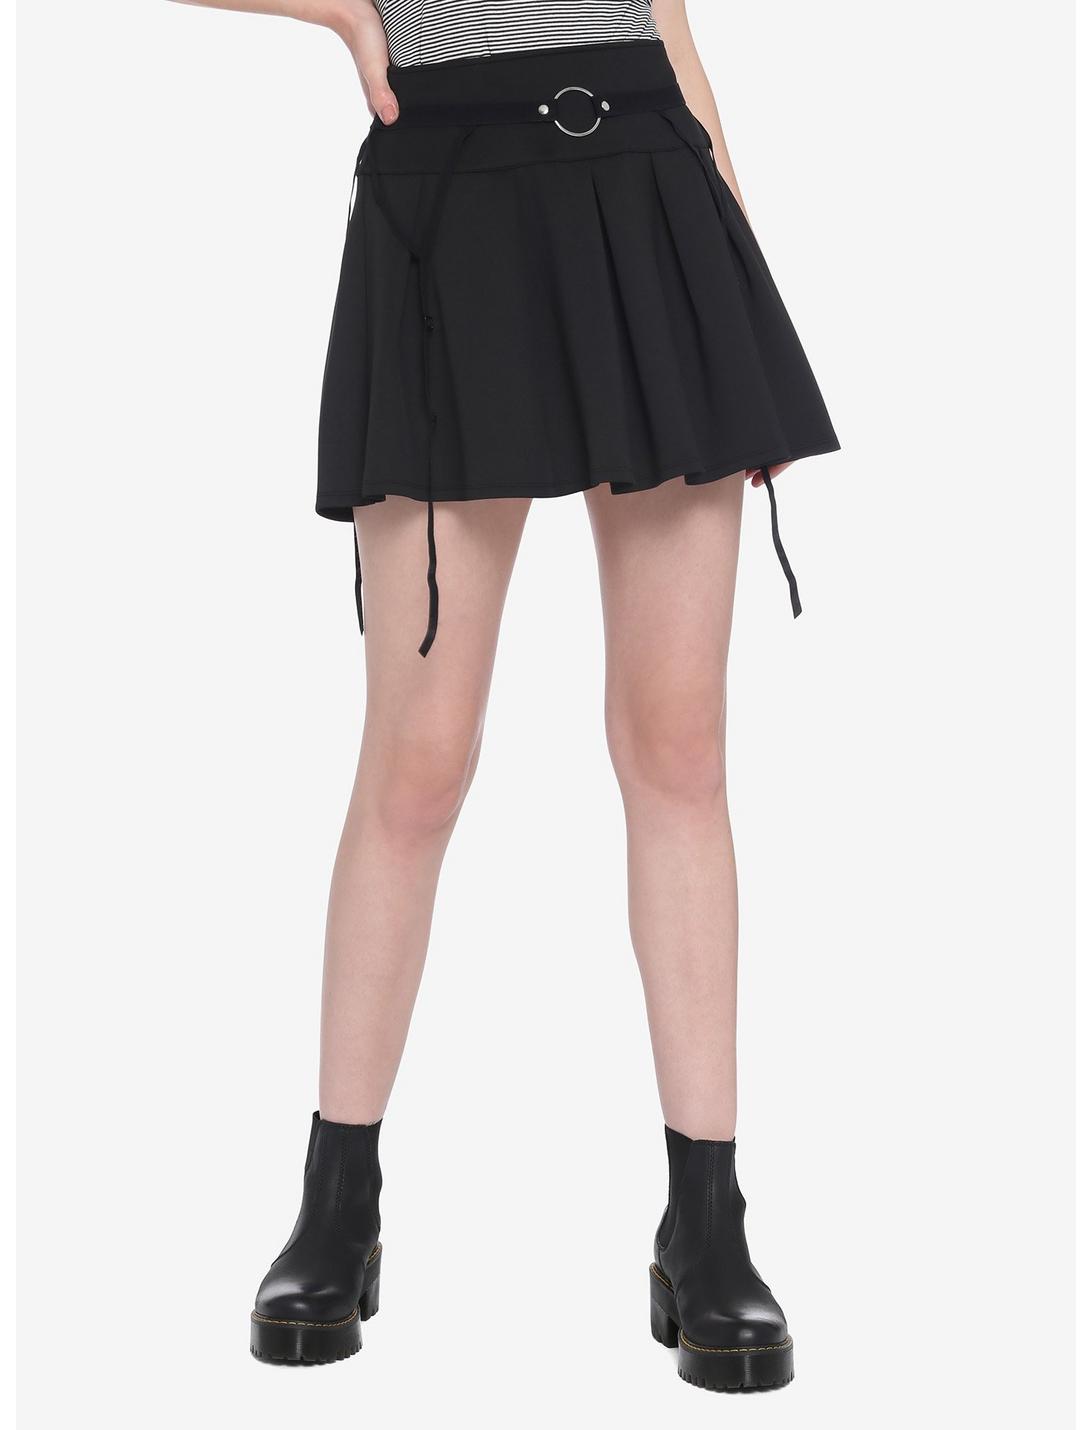 Black O-Ring Garter Belt Pleated Skater Skirt | Hot Topic